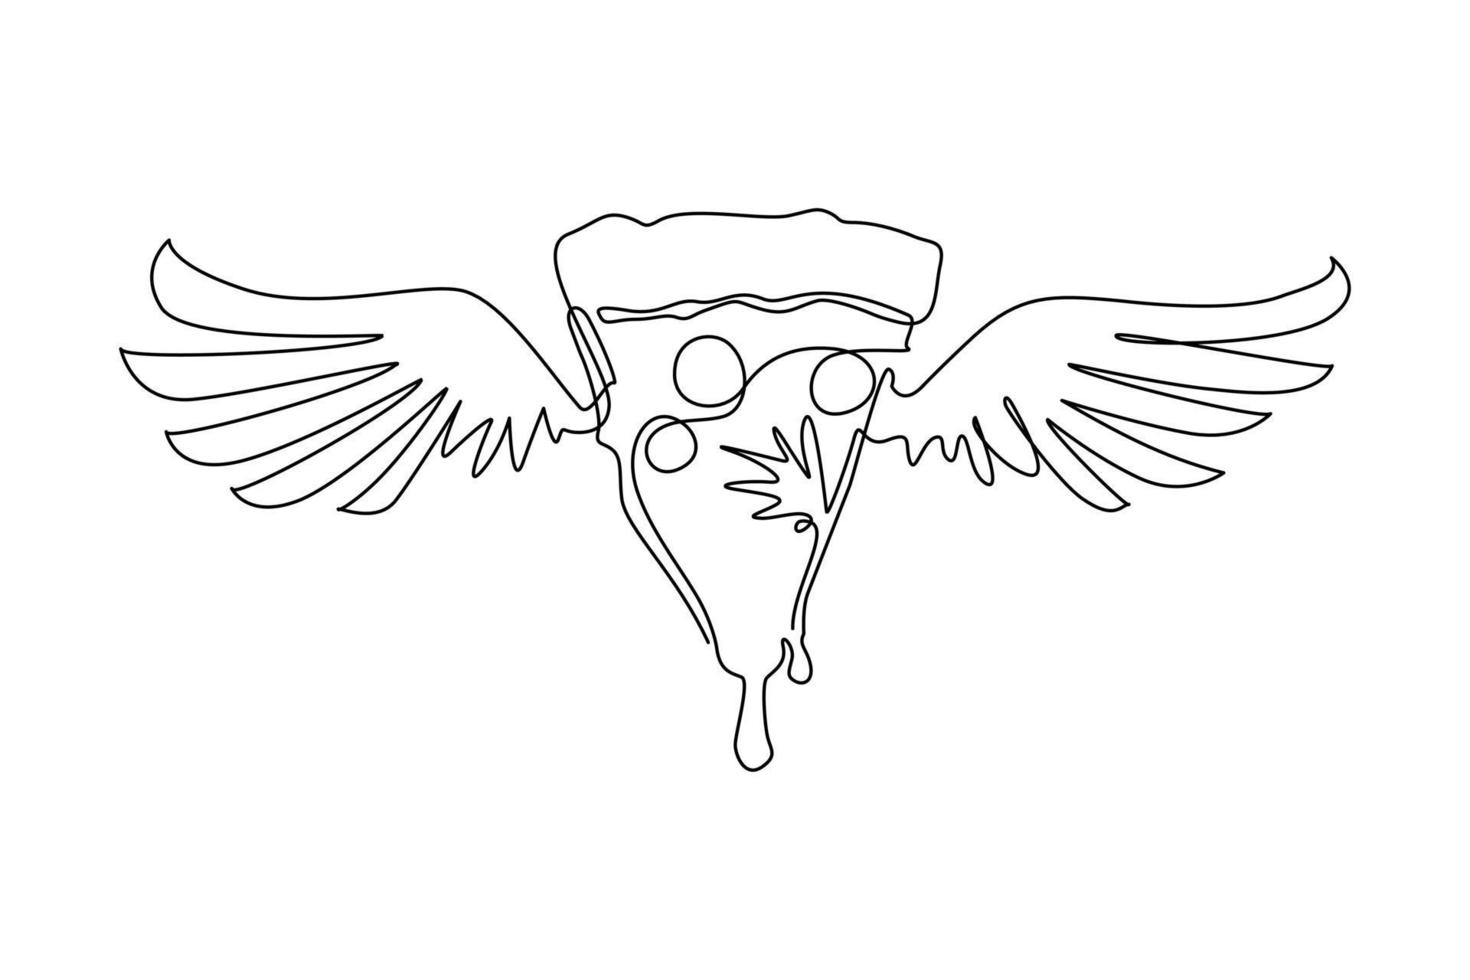 enda kontinuerlig linjeritning skivad pizza med vingar. platt isolerad pizza, måltid, leverans, café, rolig illustration med oliver och korv. älskar pizza till café. en rad rita grafisk design vektor